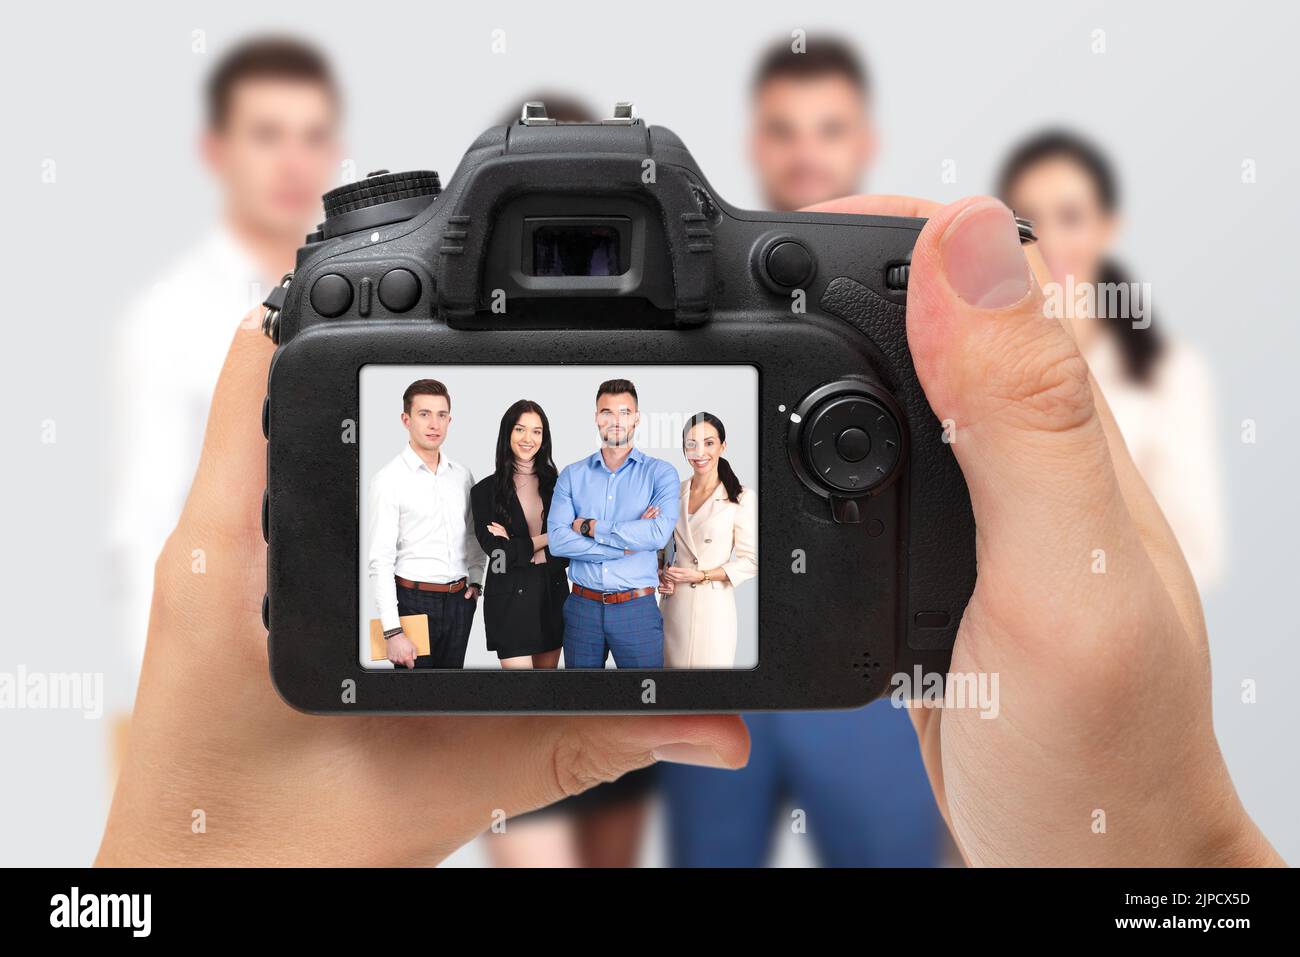 Rückseite der DSLR-Digitalkamera. Menschen posieren im Fotostudio Stockfoto